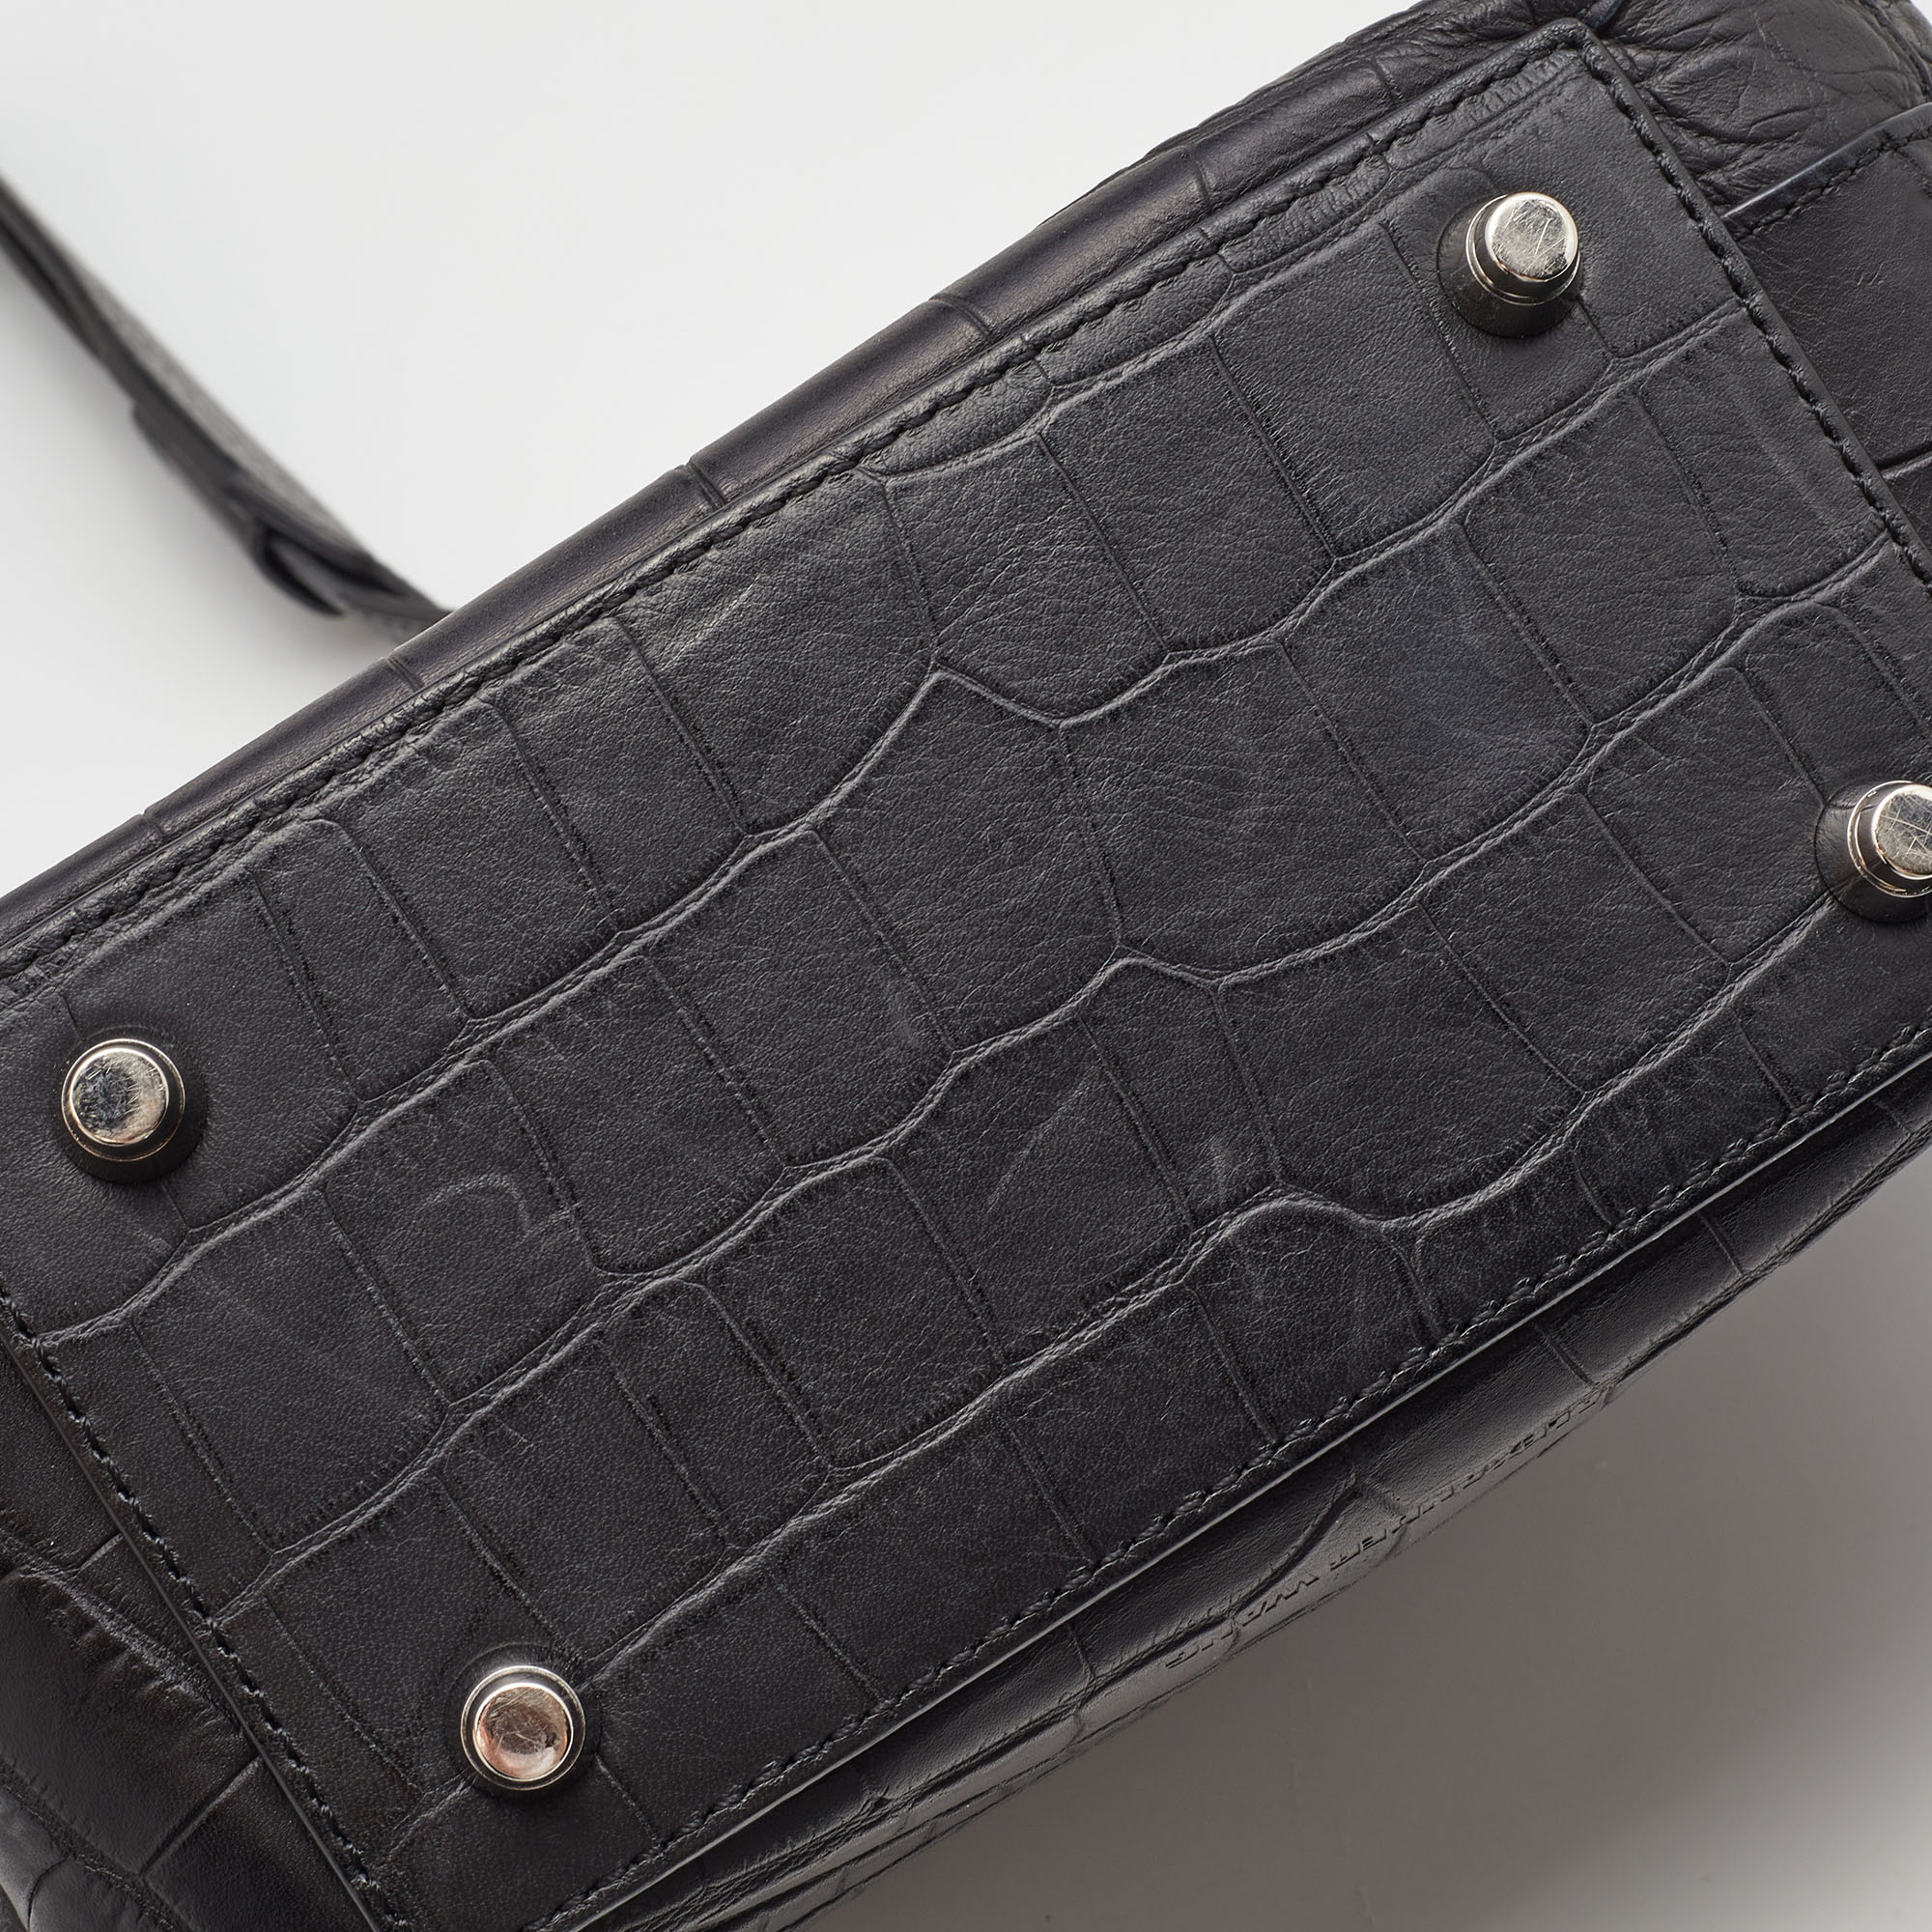 Alexander Wang Black Croc Embossed Leather Front Pocket Top Handle Bag